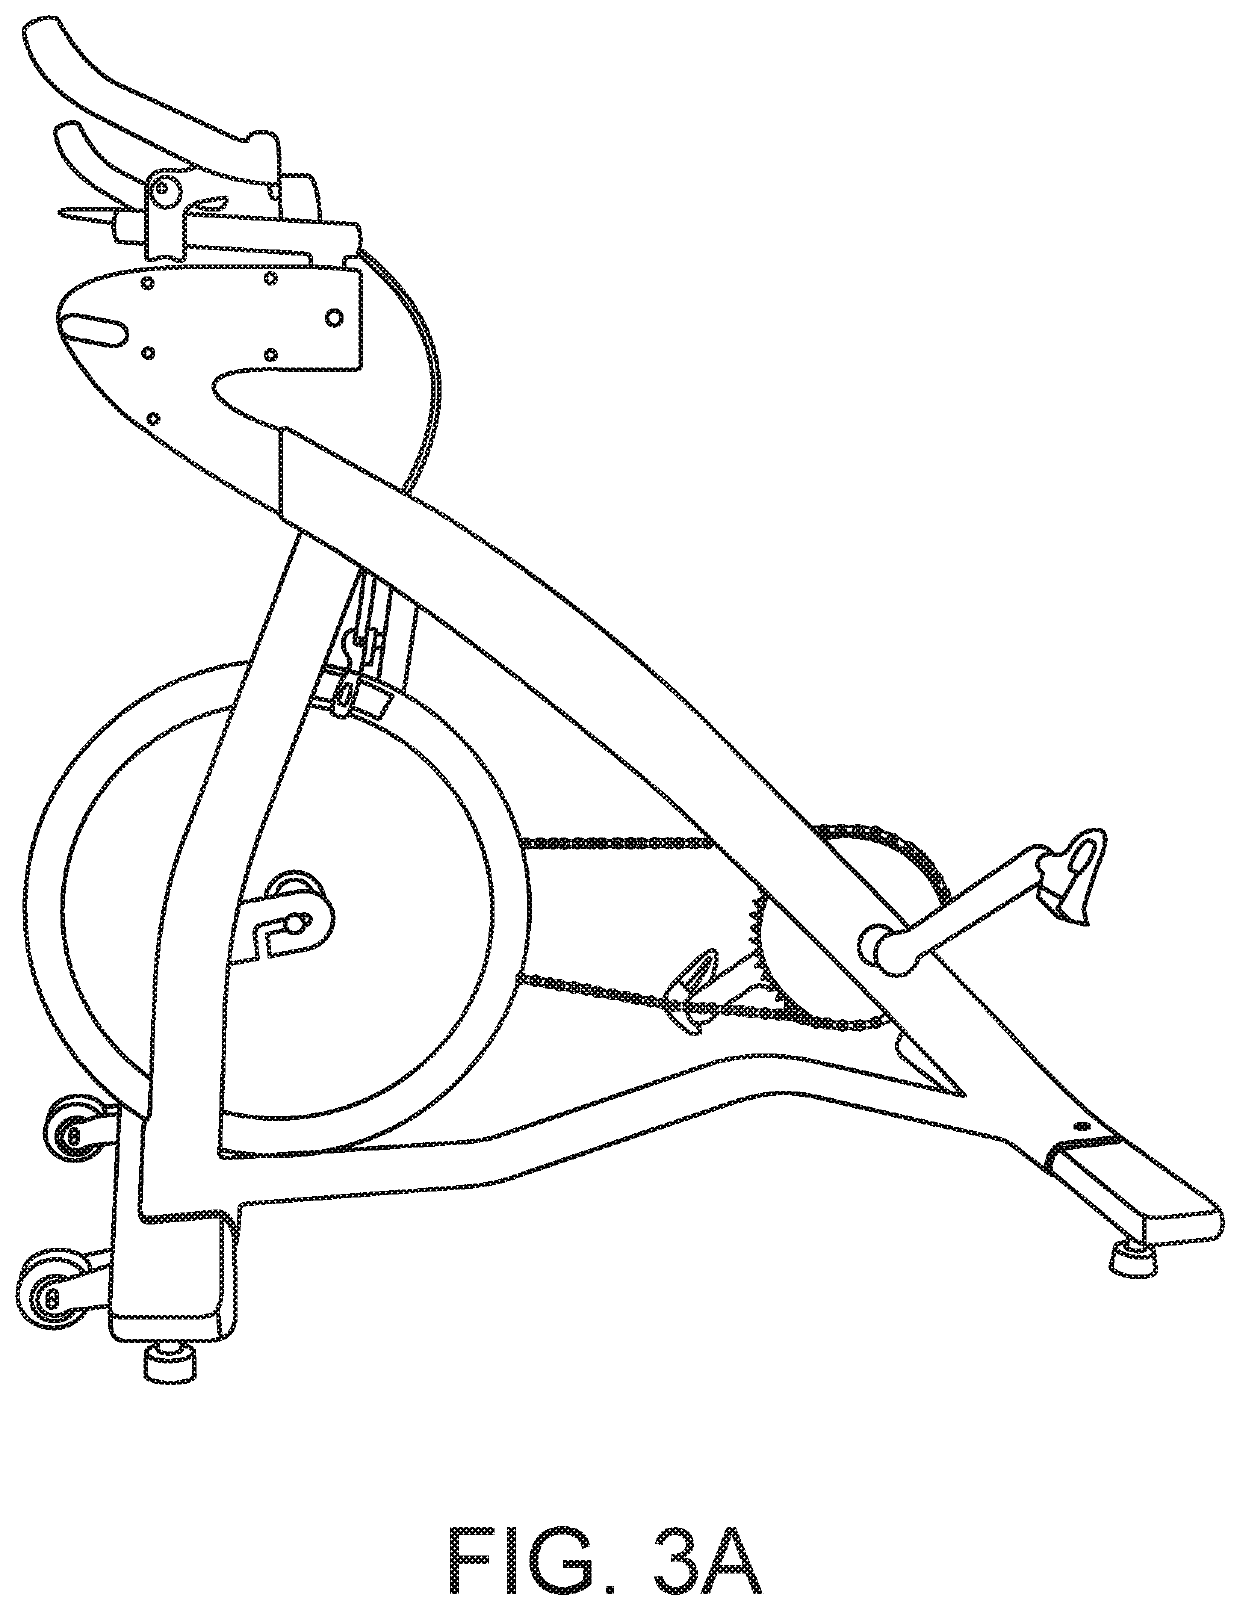 Procumbent exercise apparatus